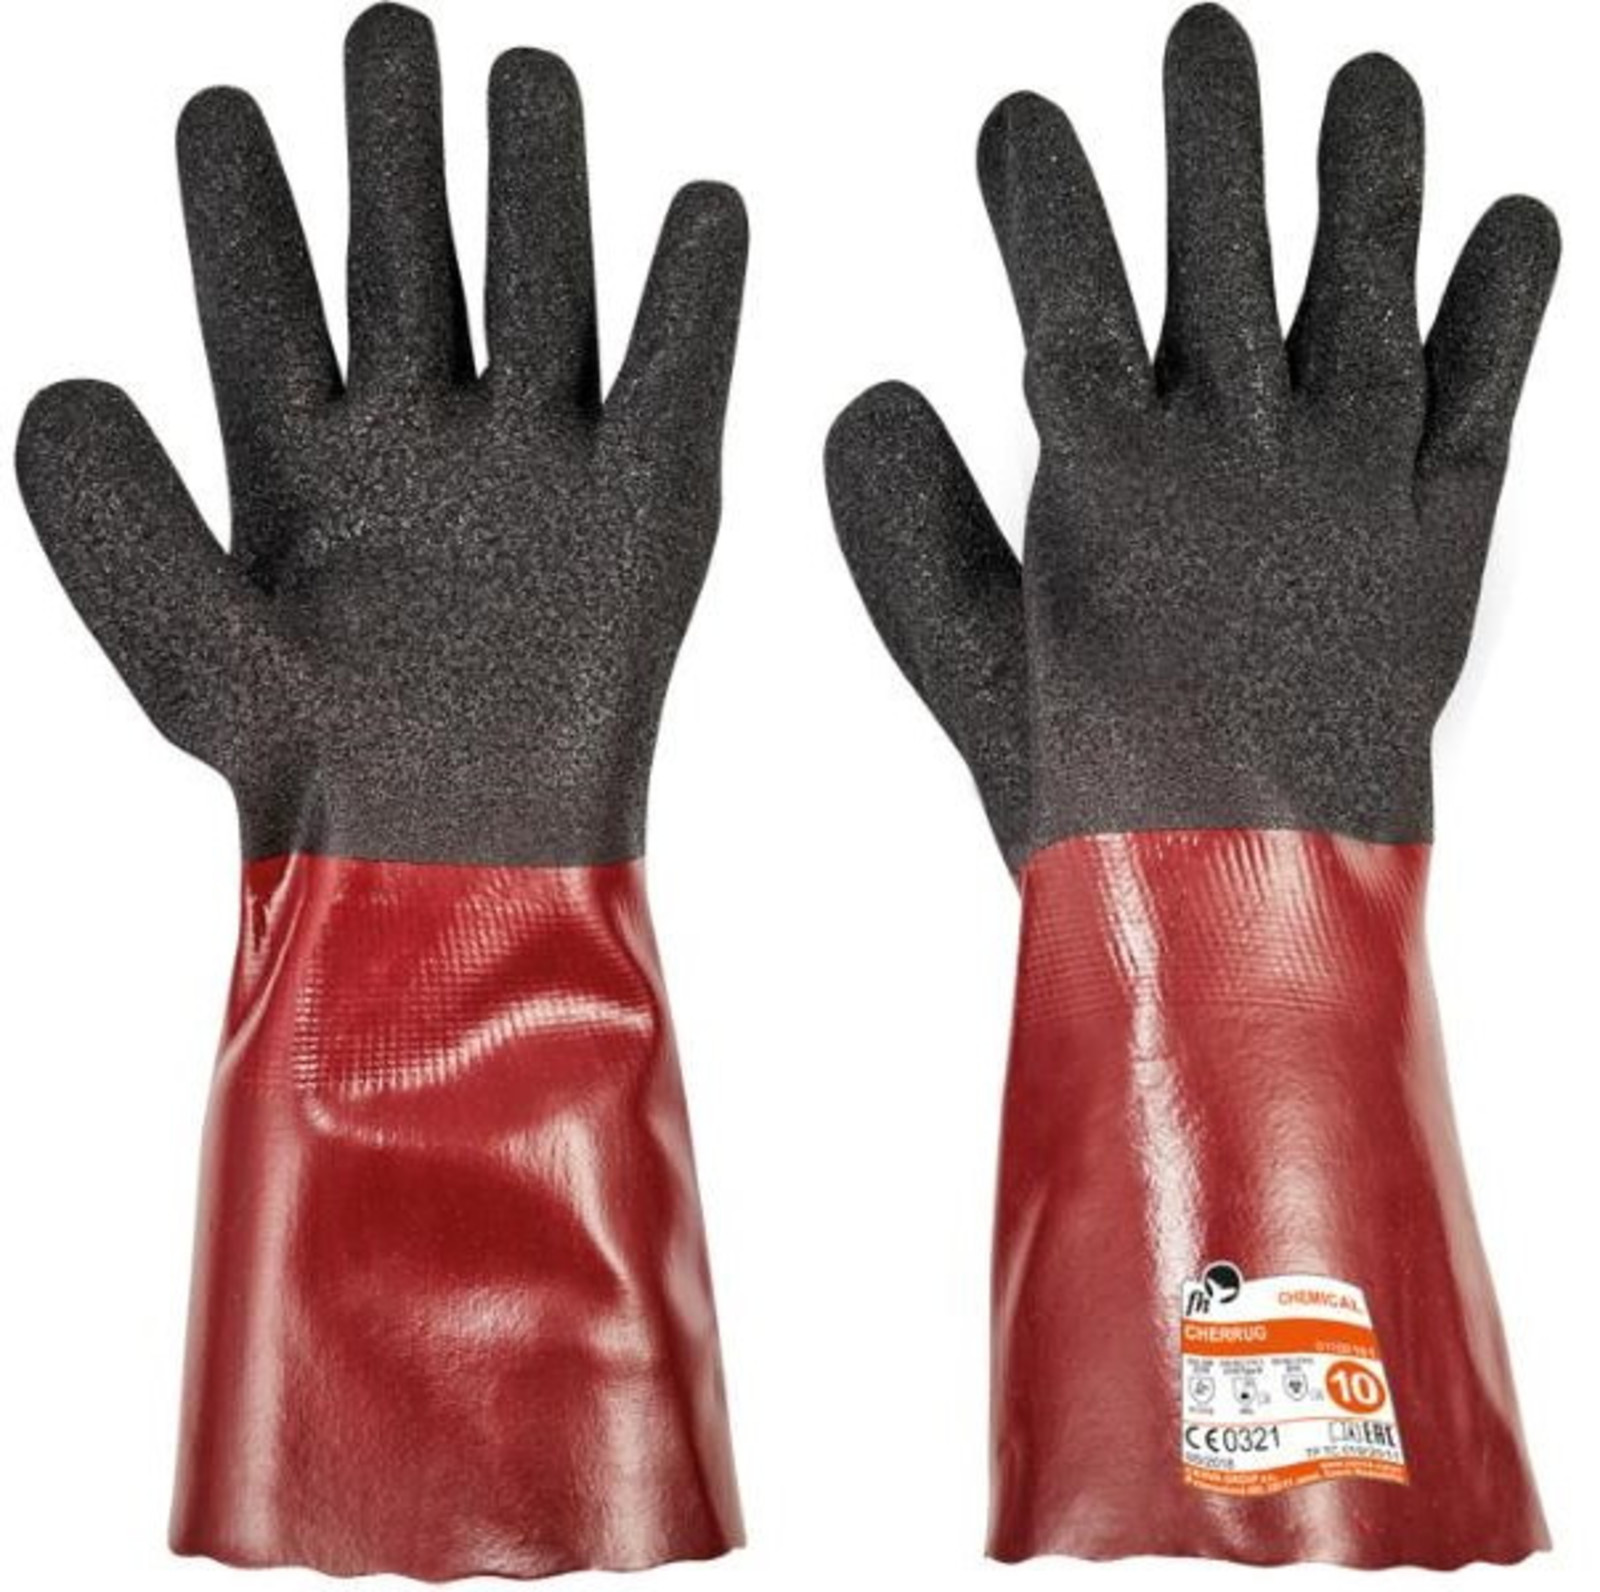 Rukavice Free Hand Cherrug - veľkosť: 9/L, farba: čierna/červená